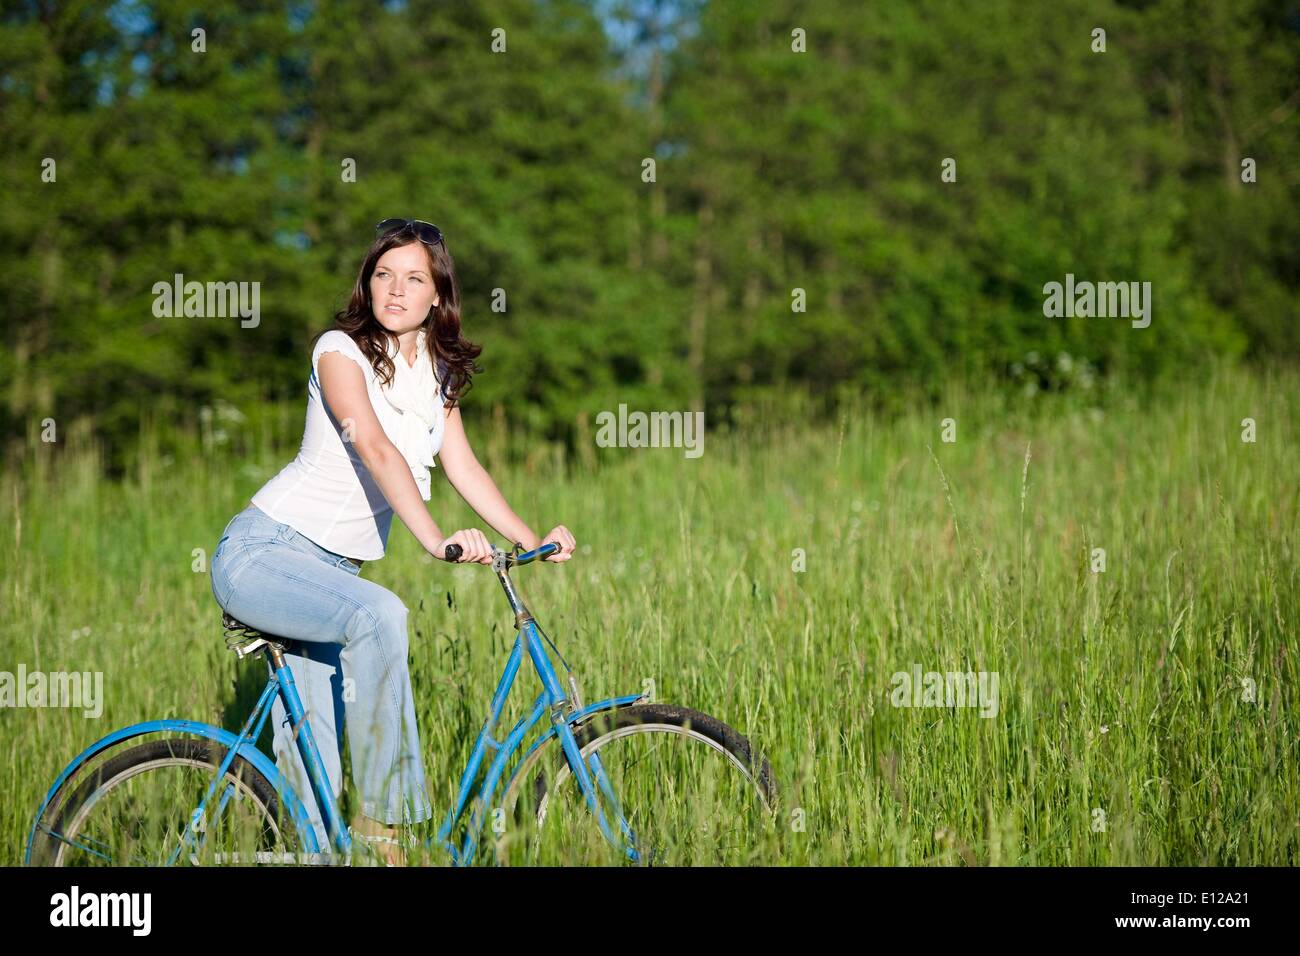 Jun 05, 2010 - Junio 5, 2010 - Mujer con antiguas bicicleta en verano meadow en día soleado Foto de stock